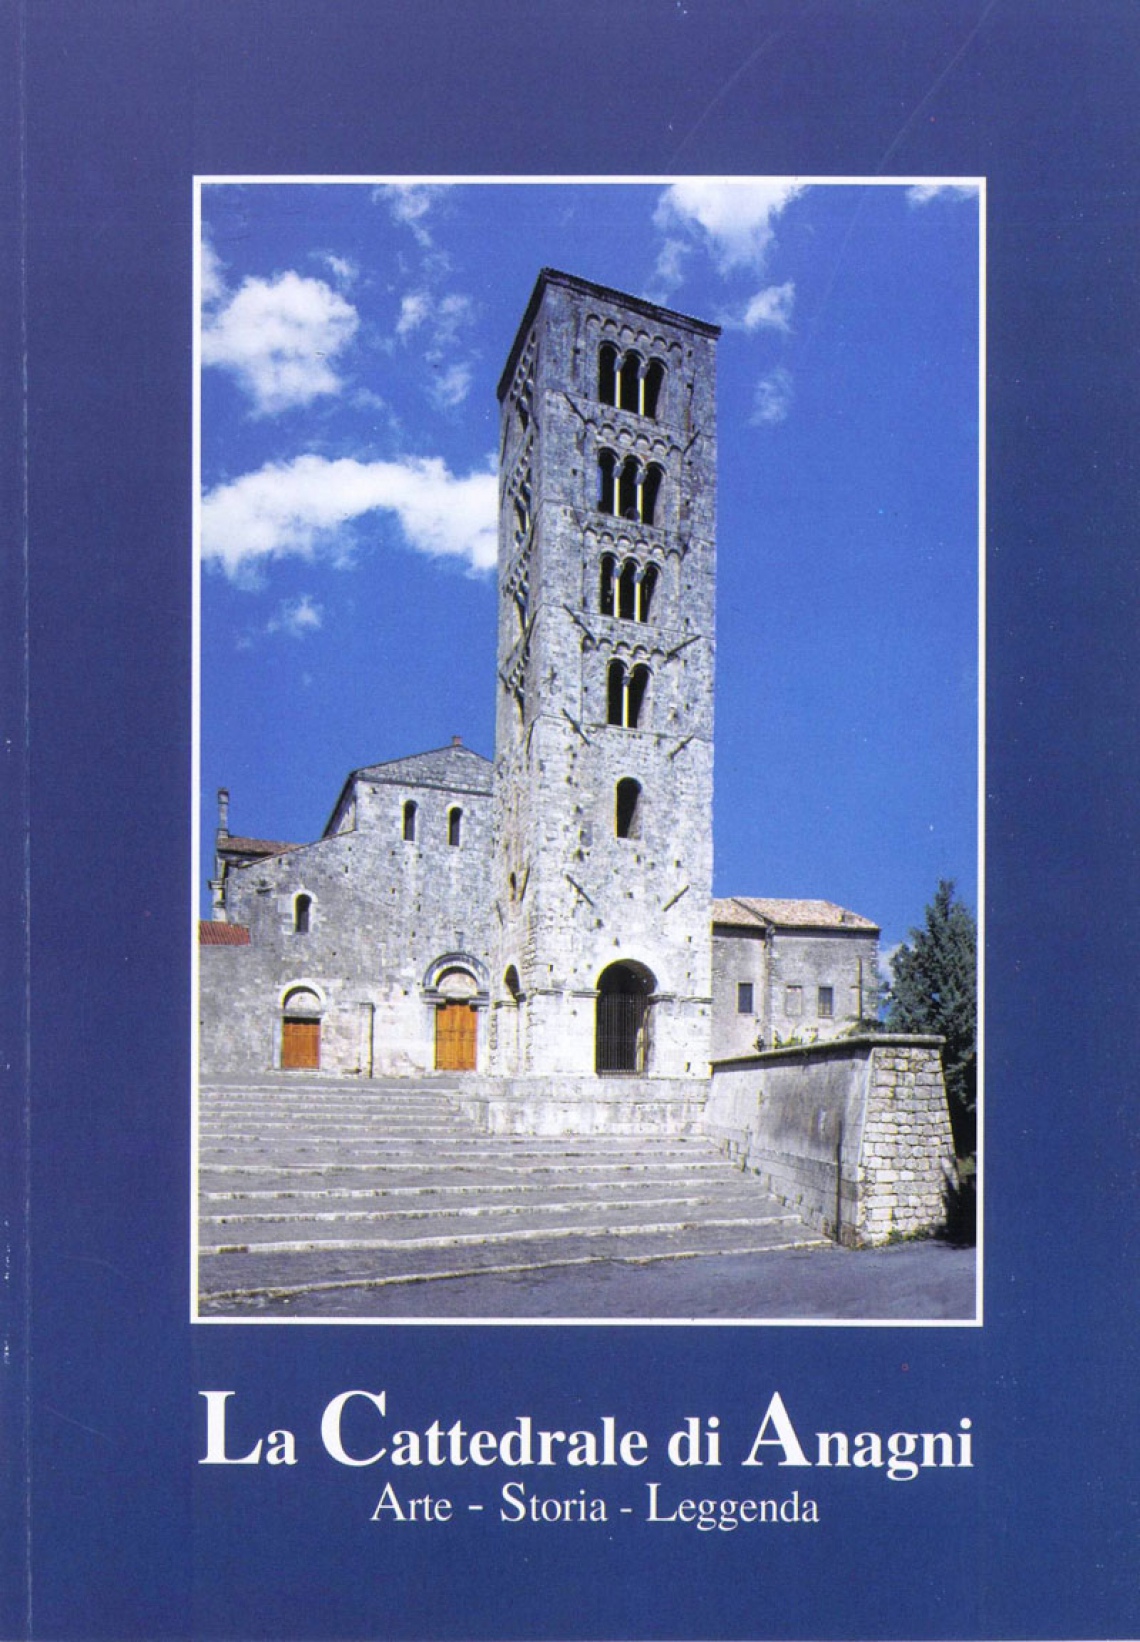 La Cattedrale di Anagni: arte, storia, leggenda